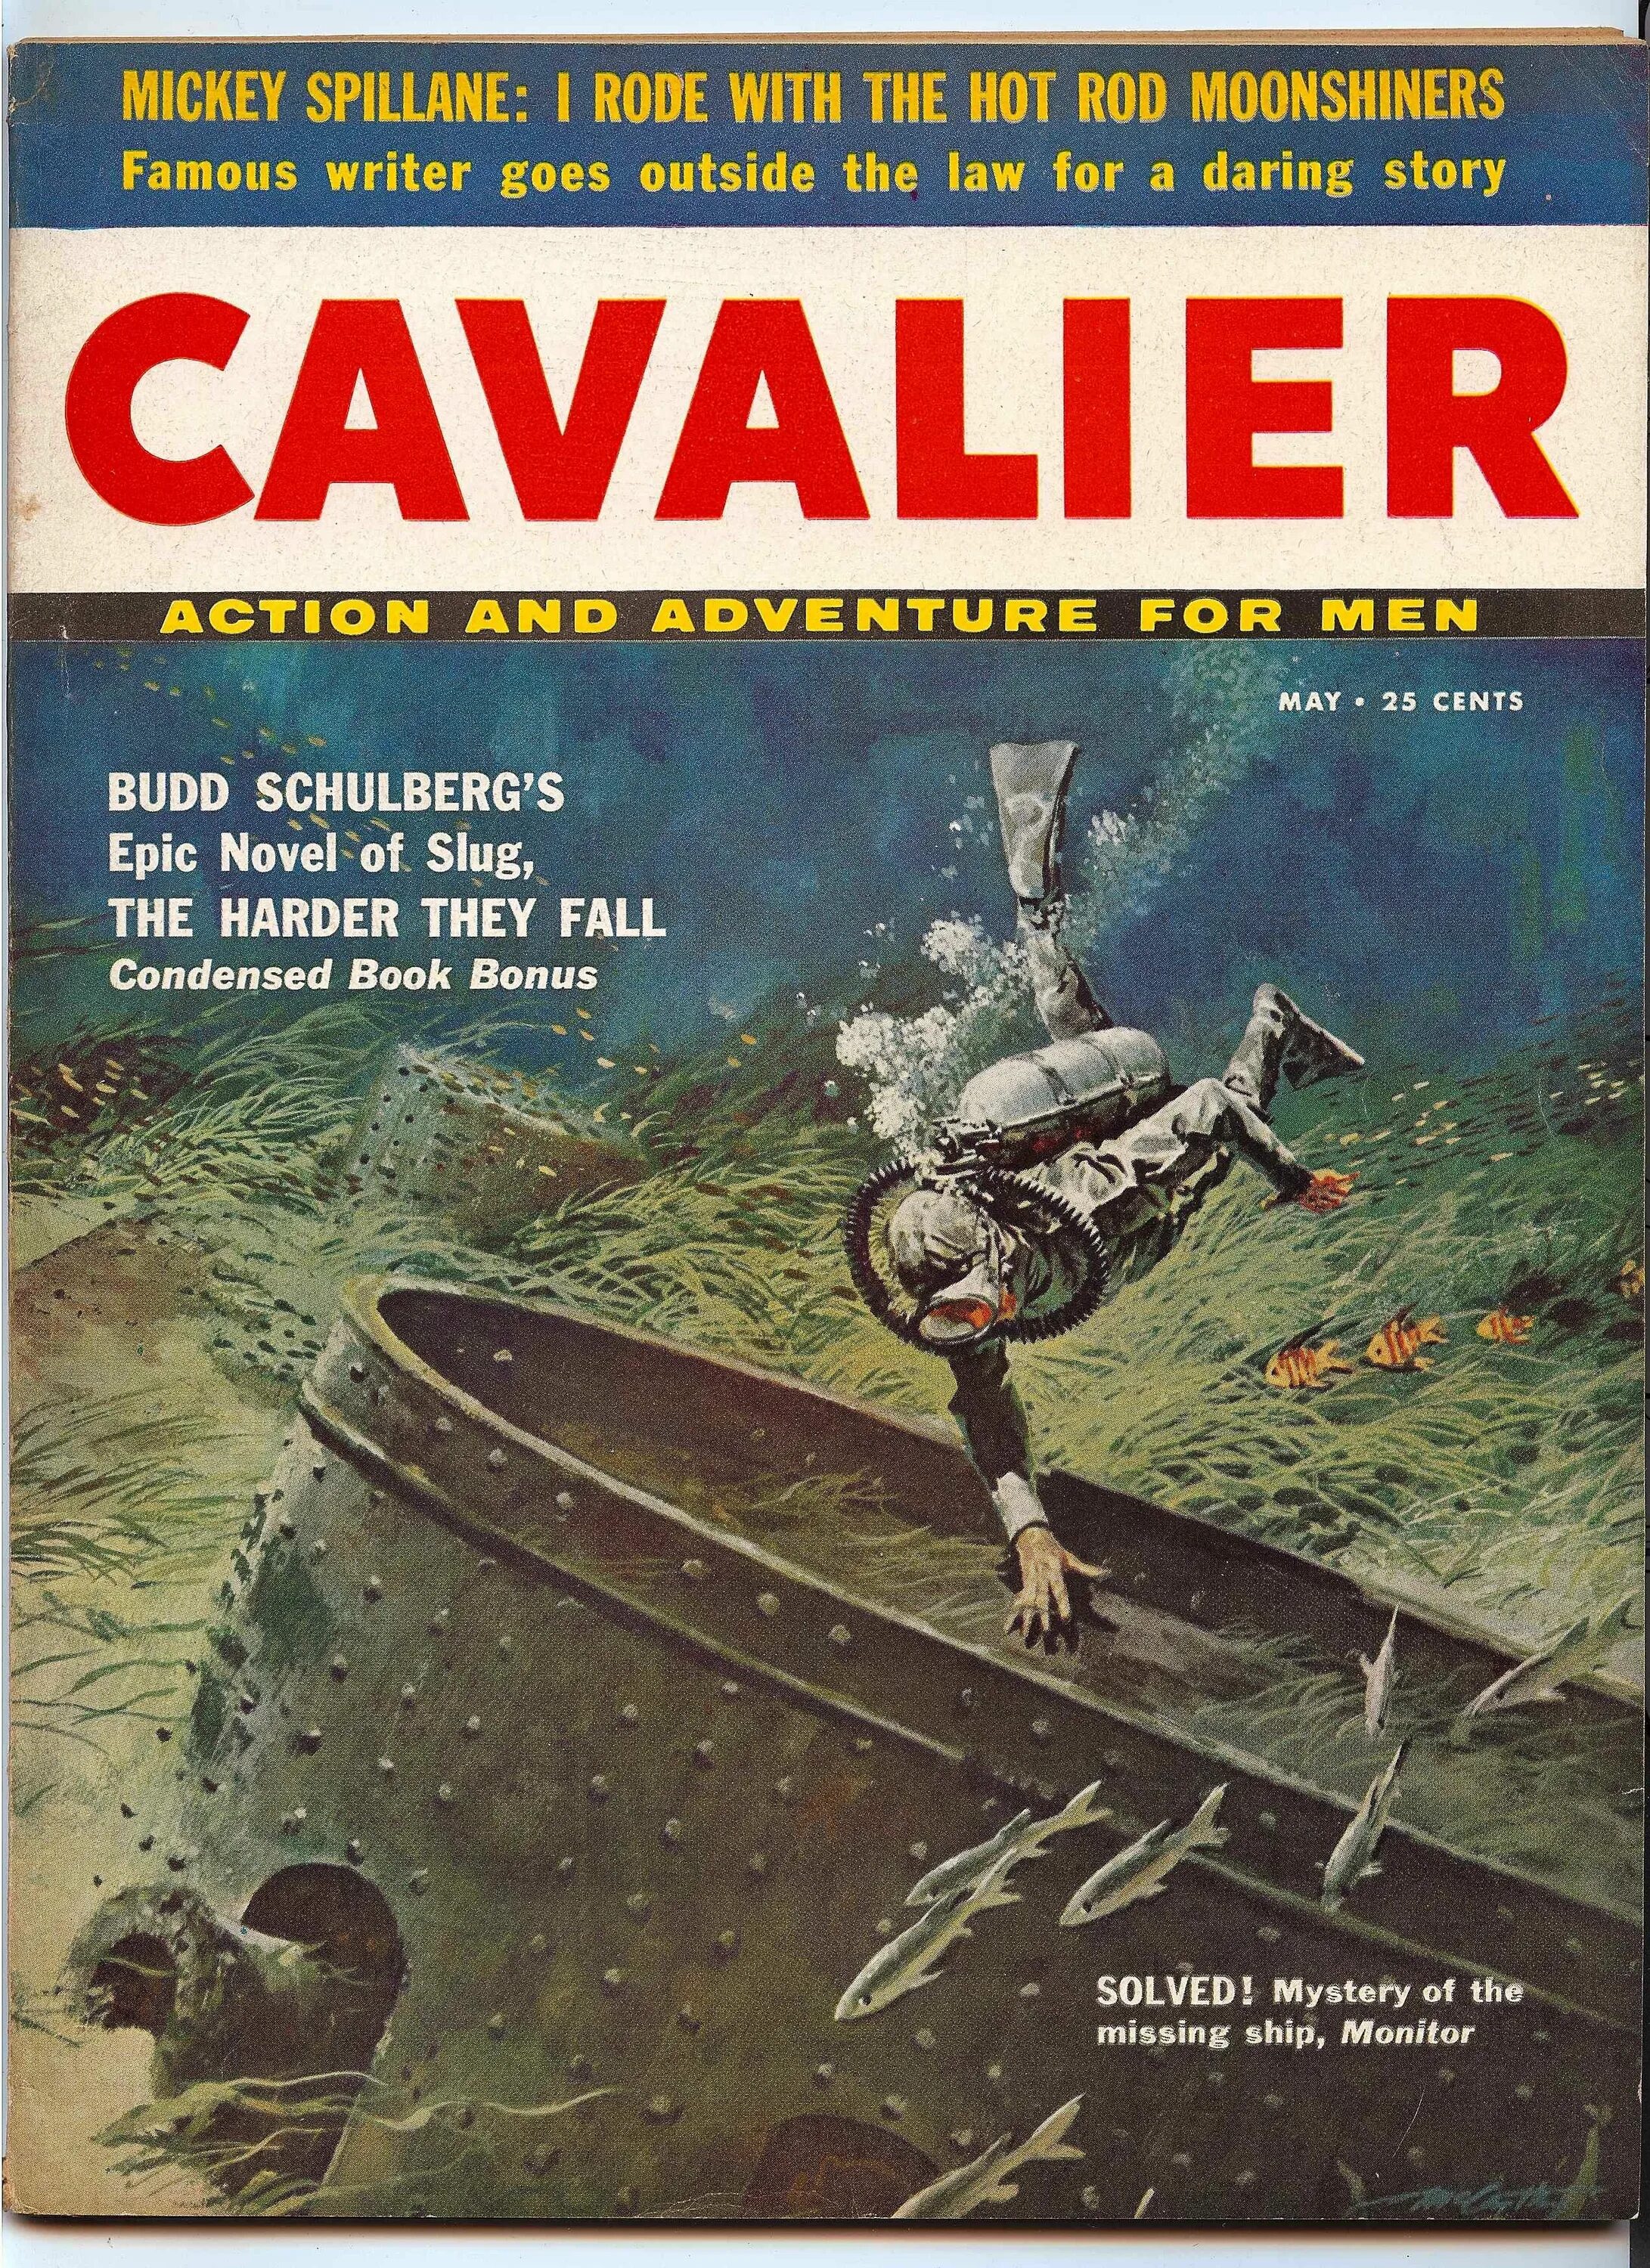 Cavalier Magazine. Sleaze Magazine Covers. Adventures magazine